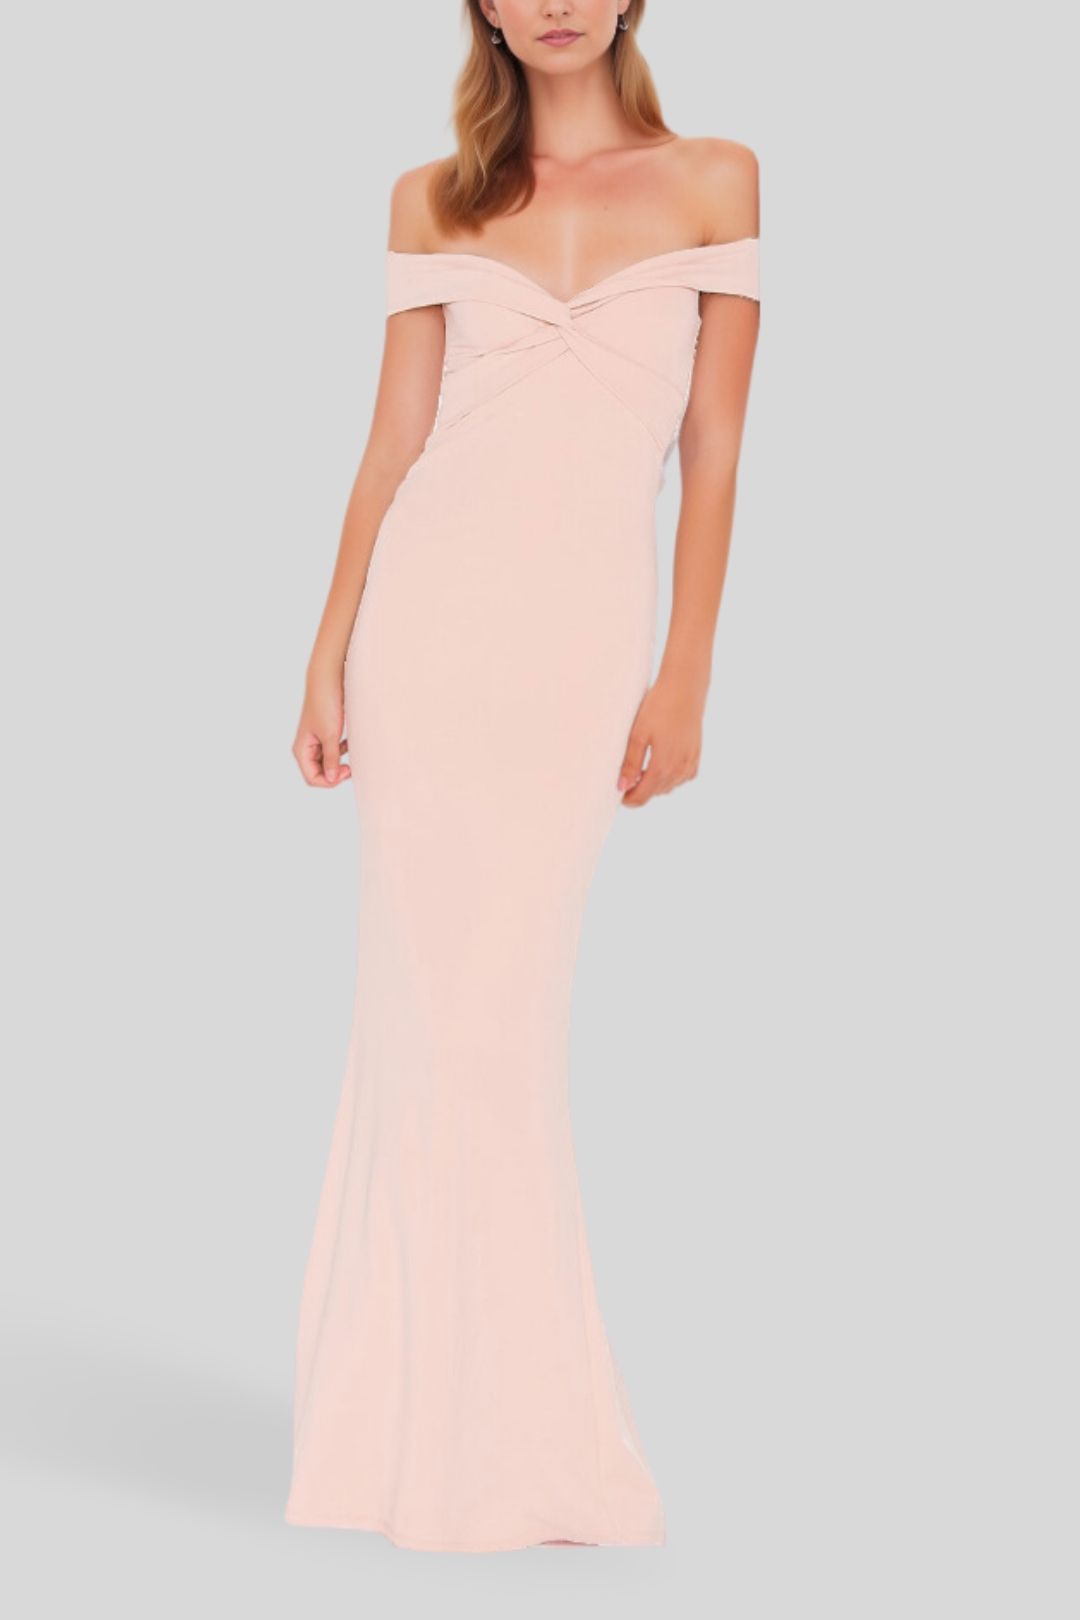 Designer Gowns | Shop Designer Evening & Formal Gowns Online